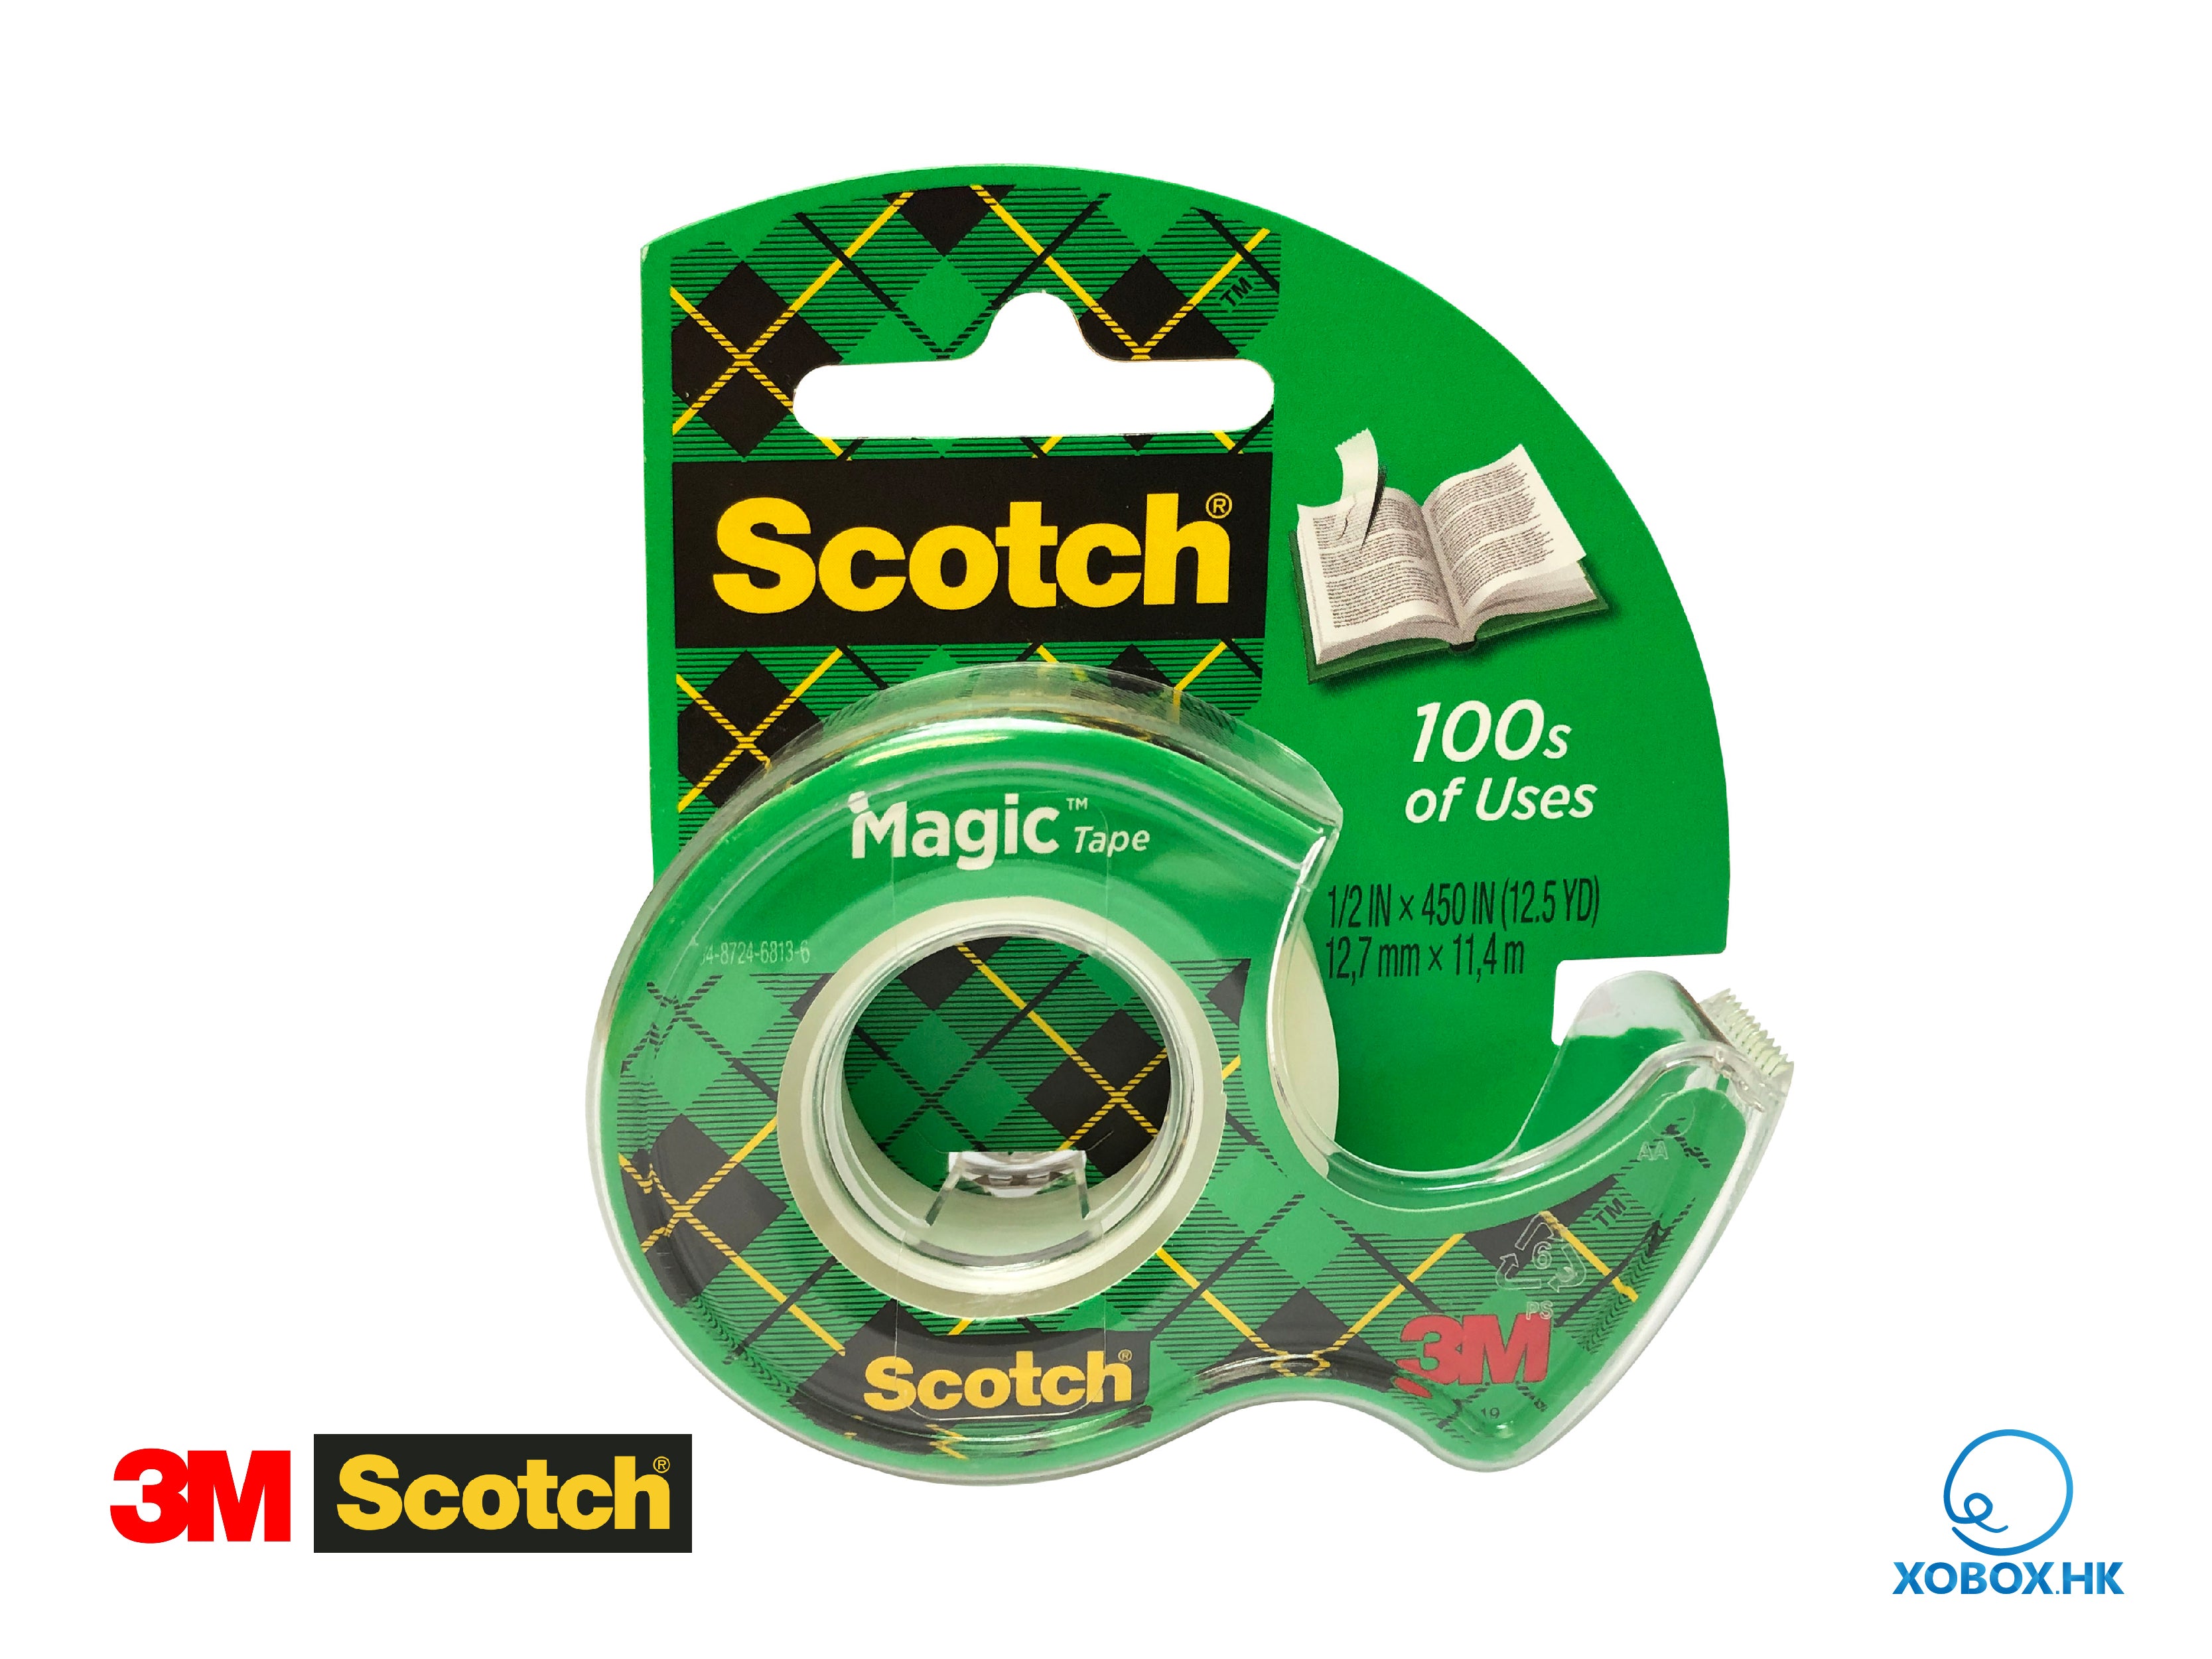 3M Scotch Magic Tape in Dispenser 3M神奇隱形膠紙+蝸牛座